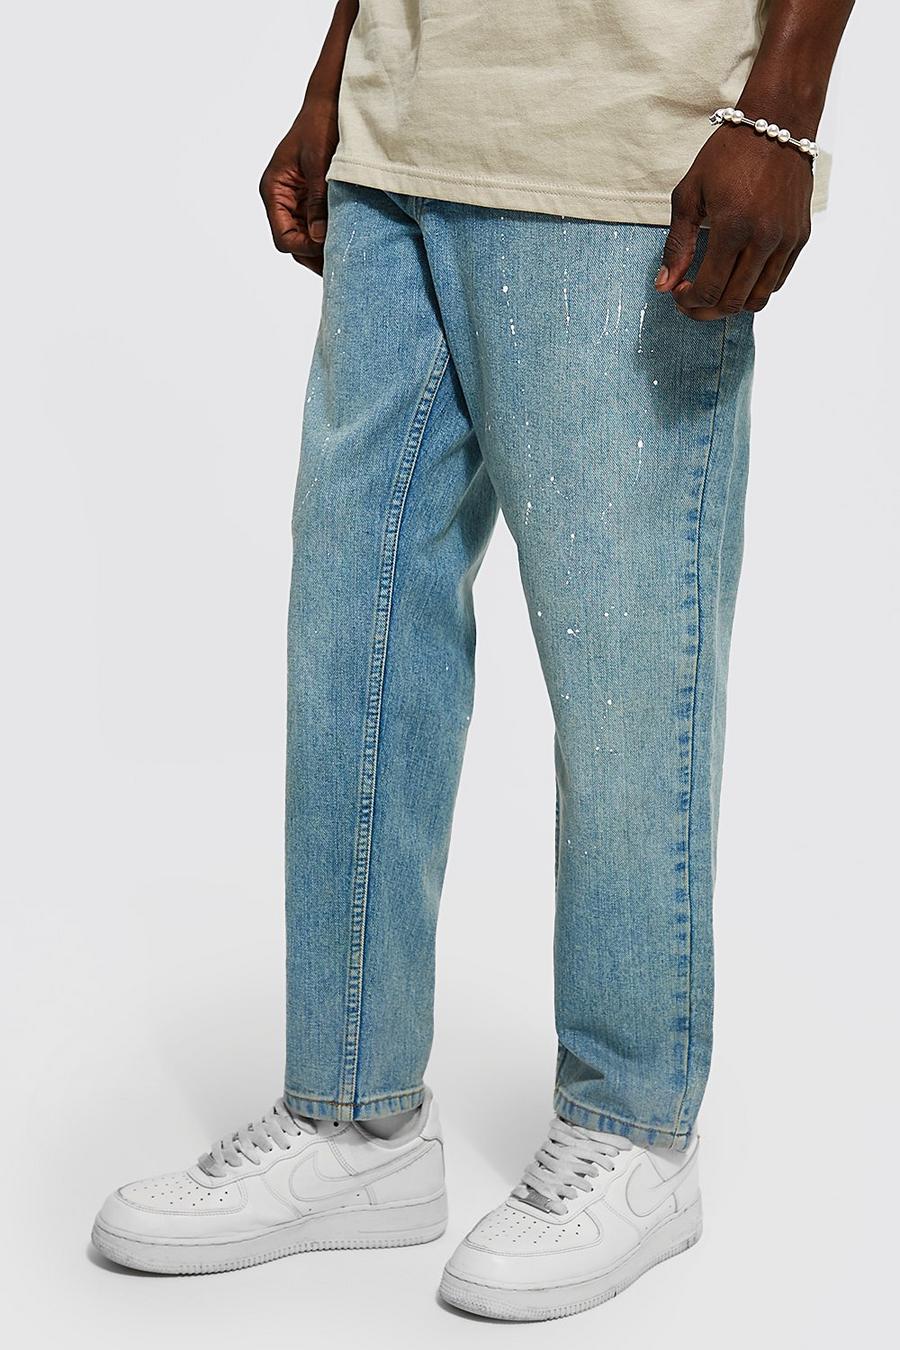 Schmale Jeans mit Farbspritzern, Antique blue